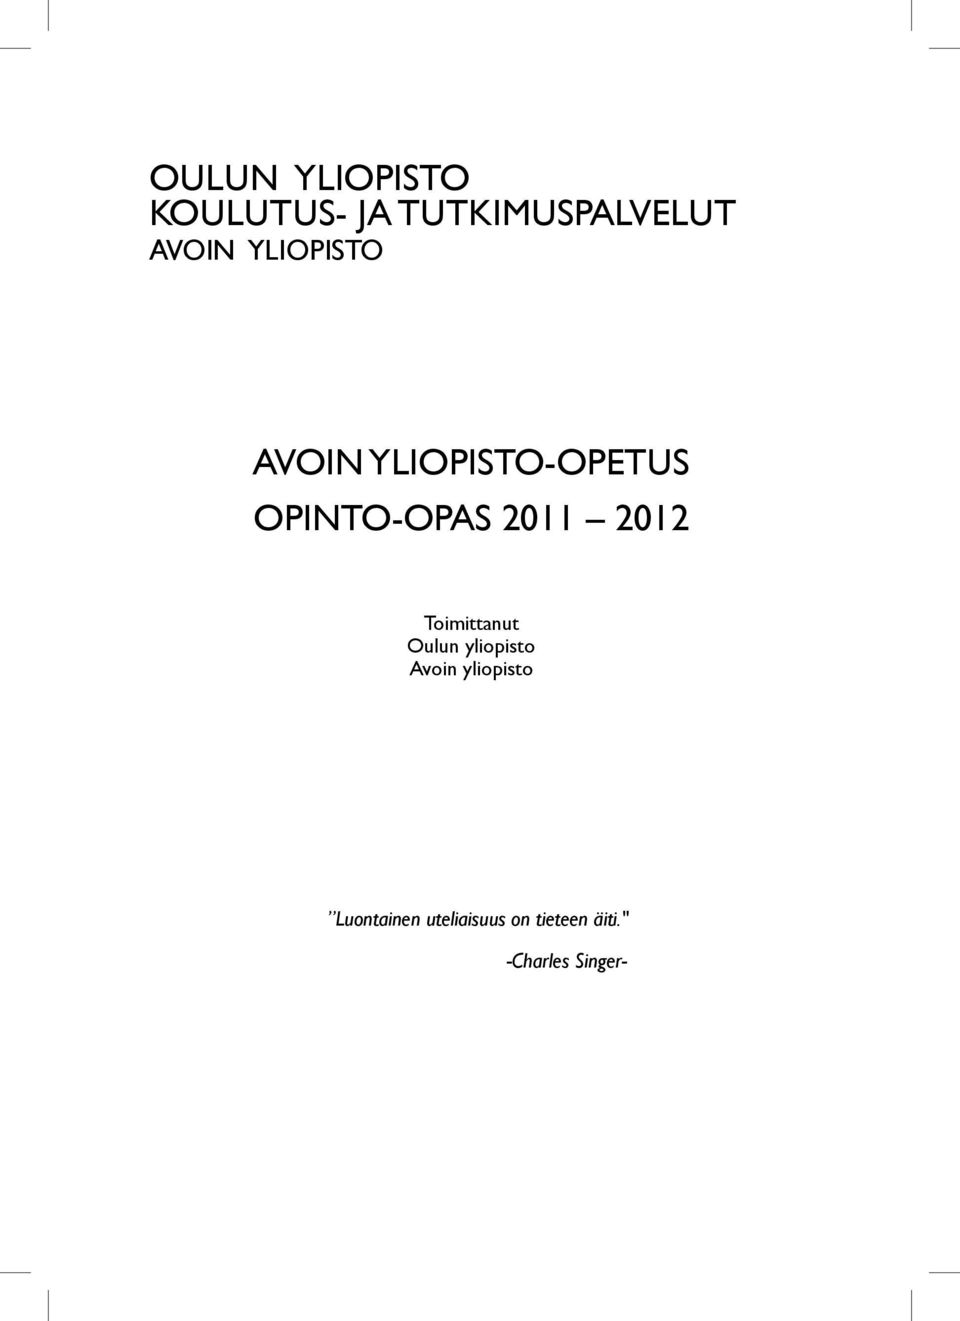 2012 Toimittanut Oulun yliopisto Avoin yliopisto